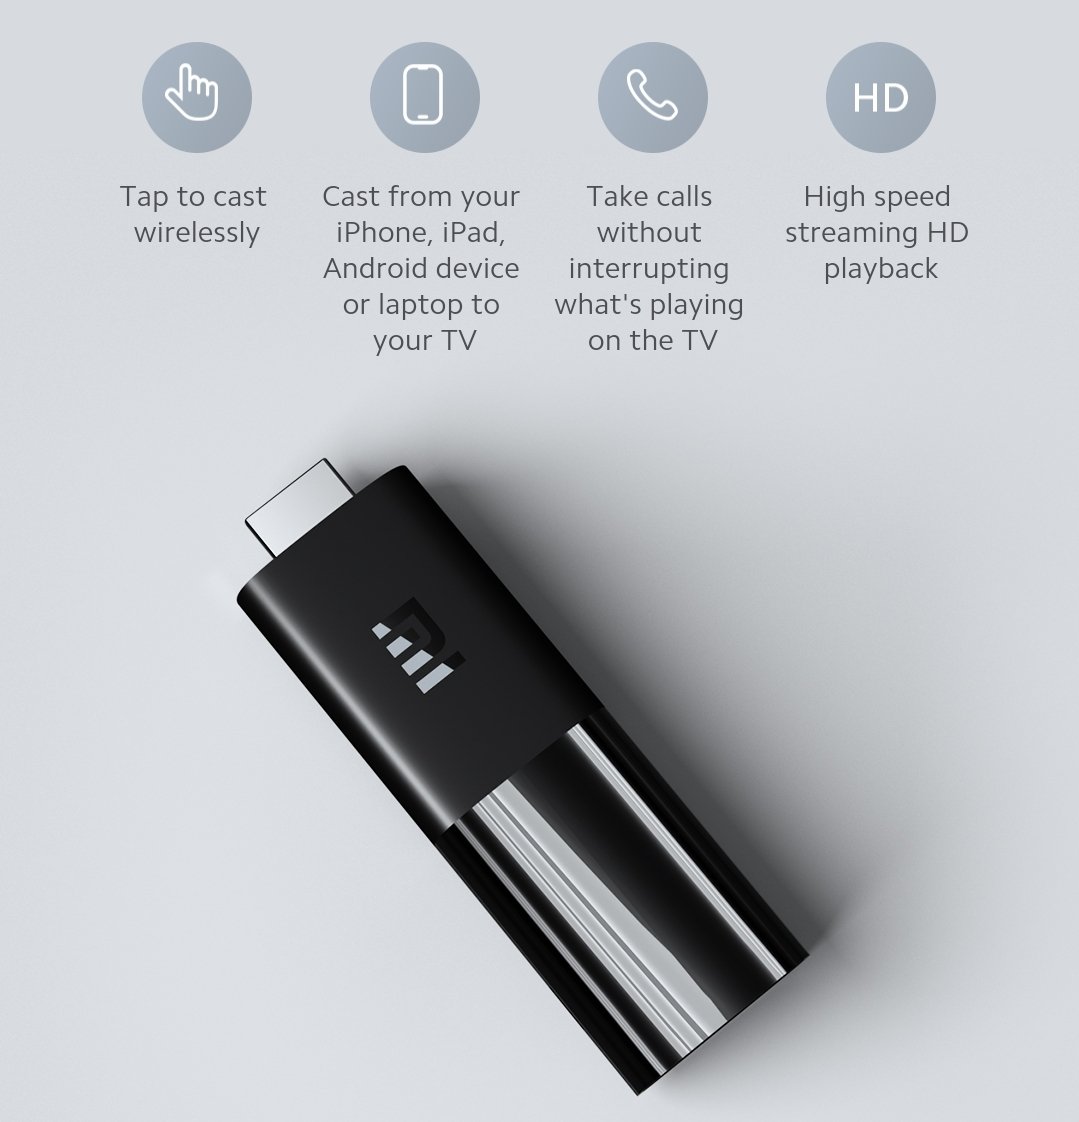 Mi TV Stick EU - Xiaomi